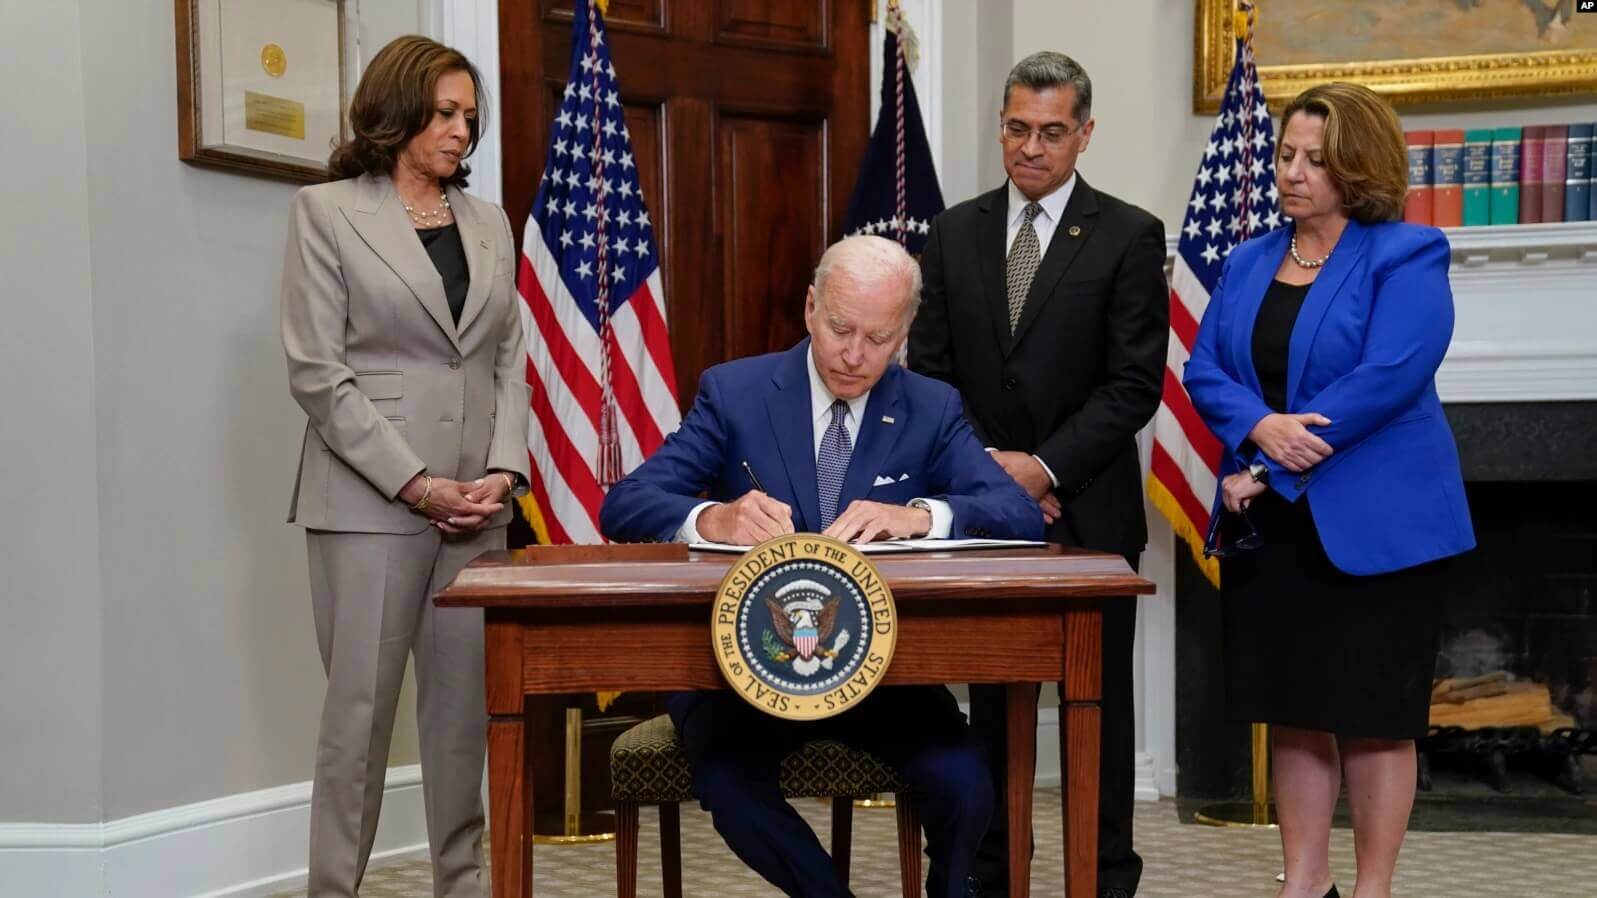 El presidente Joe Biden firma una orden ejecutiva sobre el acceso al aborto, en la Sala Roosevelt de la Casa Blanca, el viernes 8 de julio de 2022. (Foto AP/Evan Vucci)